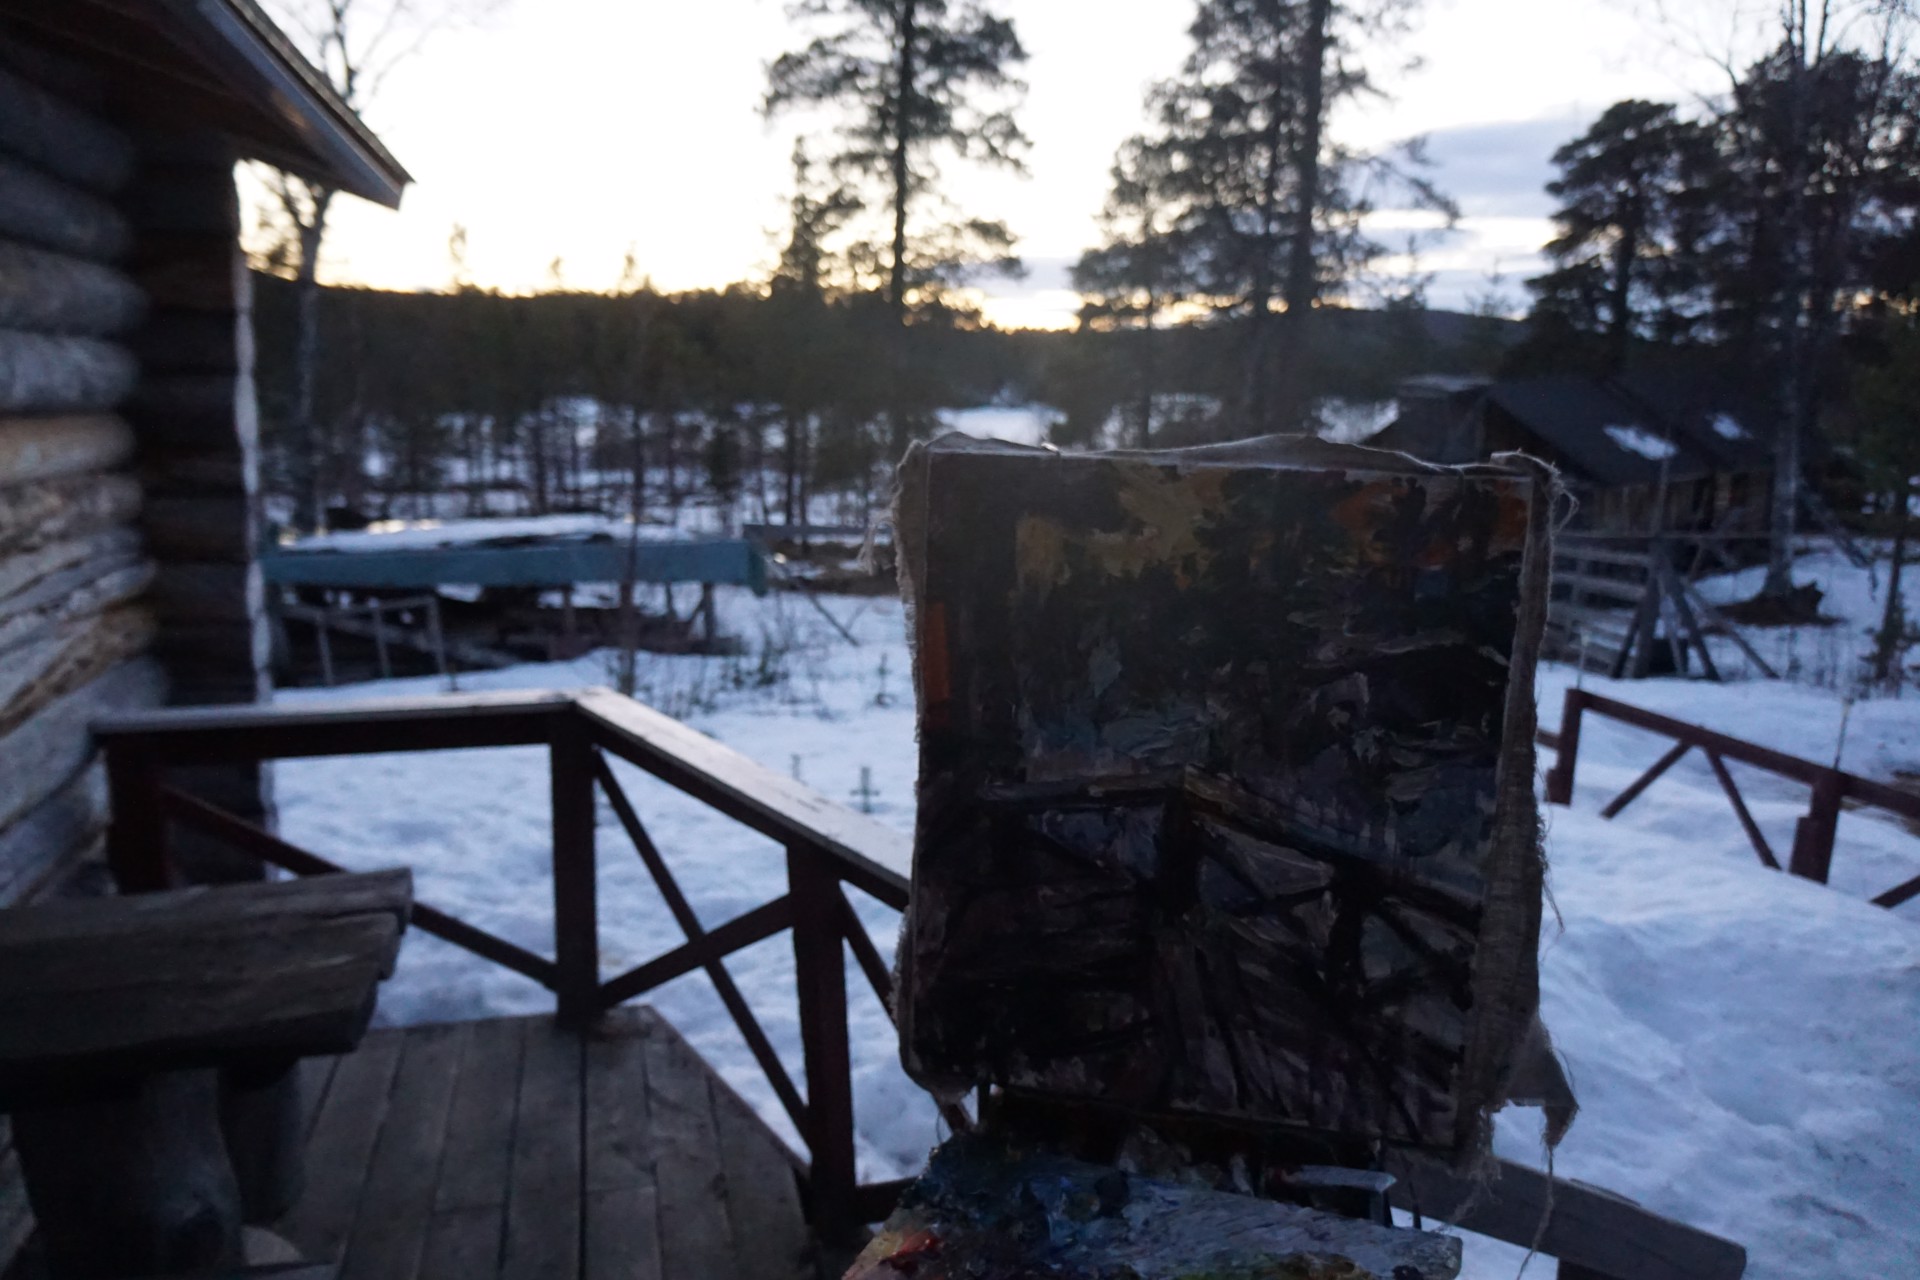 Midnight Sun in Finland (Last Snow) by Ulrich Gleiter